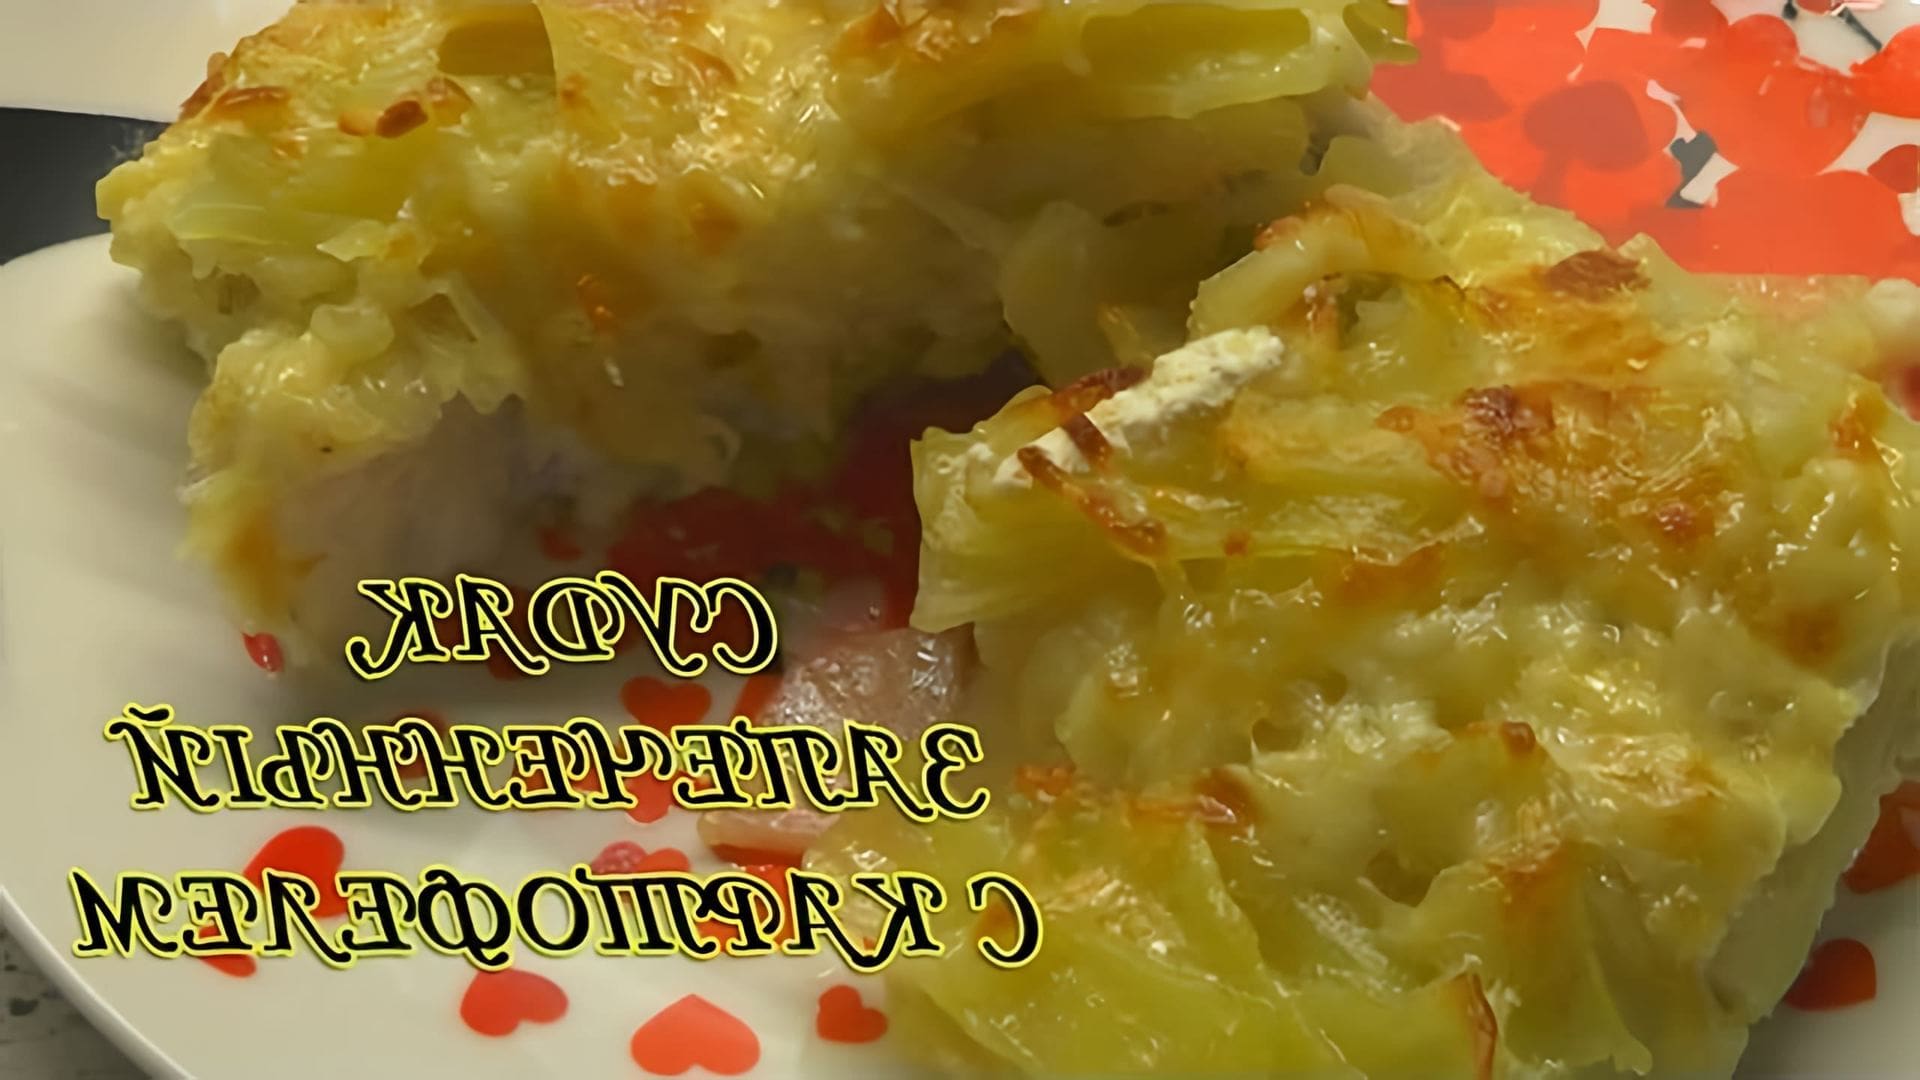 В этом видео демонстрируется рецепт приготовления судака в духовке с картофелем